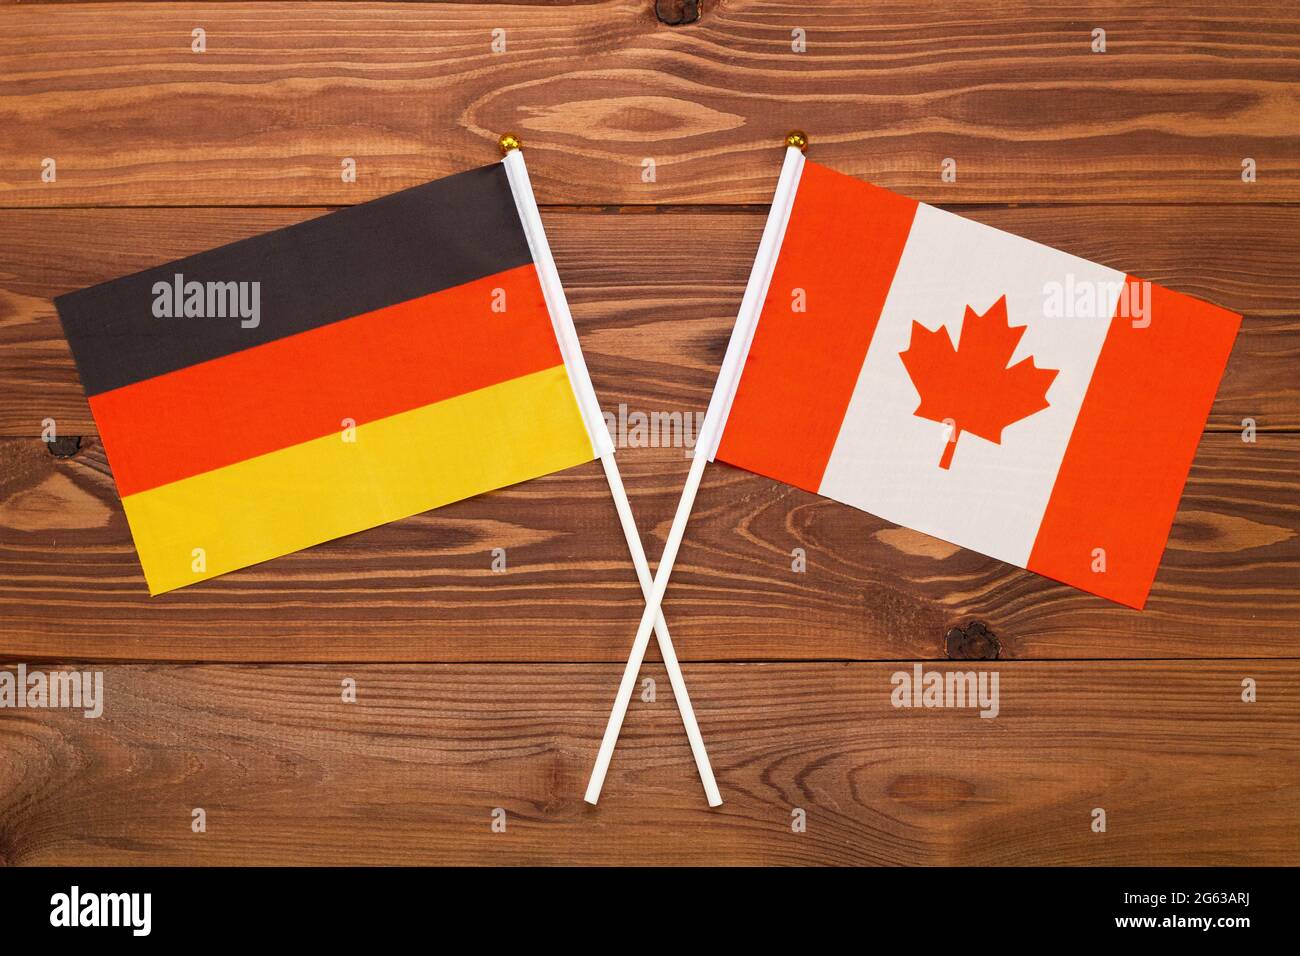 Die Flagge Deutschlands und die Flagge Kanadas kreuzten sich. Das Bild veranschaulicht die Beziehung zwischen den Ländern. Fotografie für Nachrichten Stockfoto